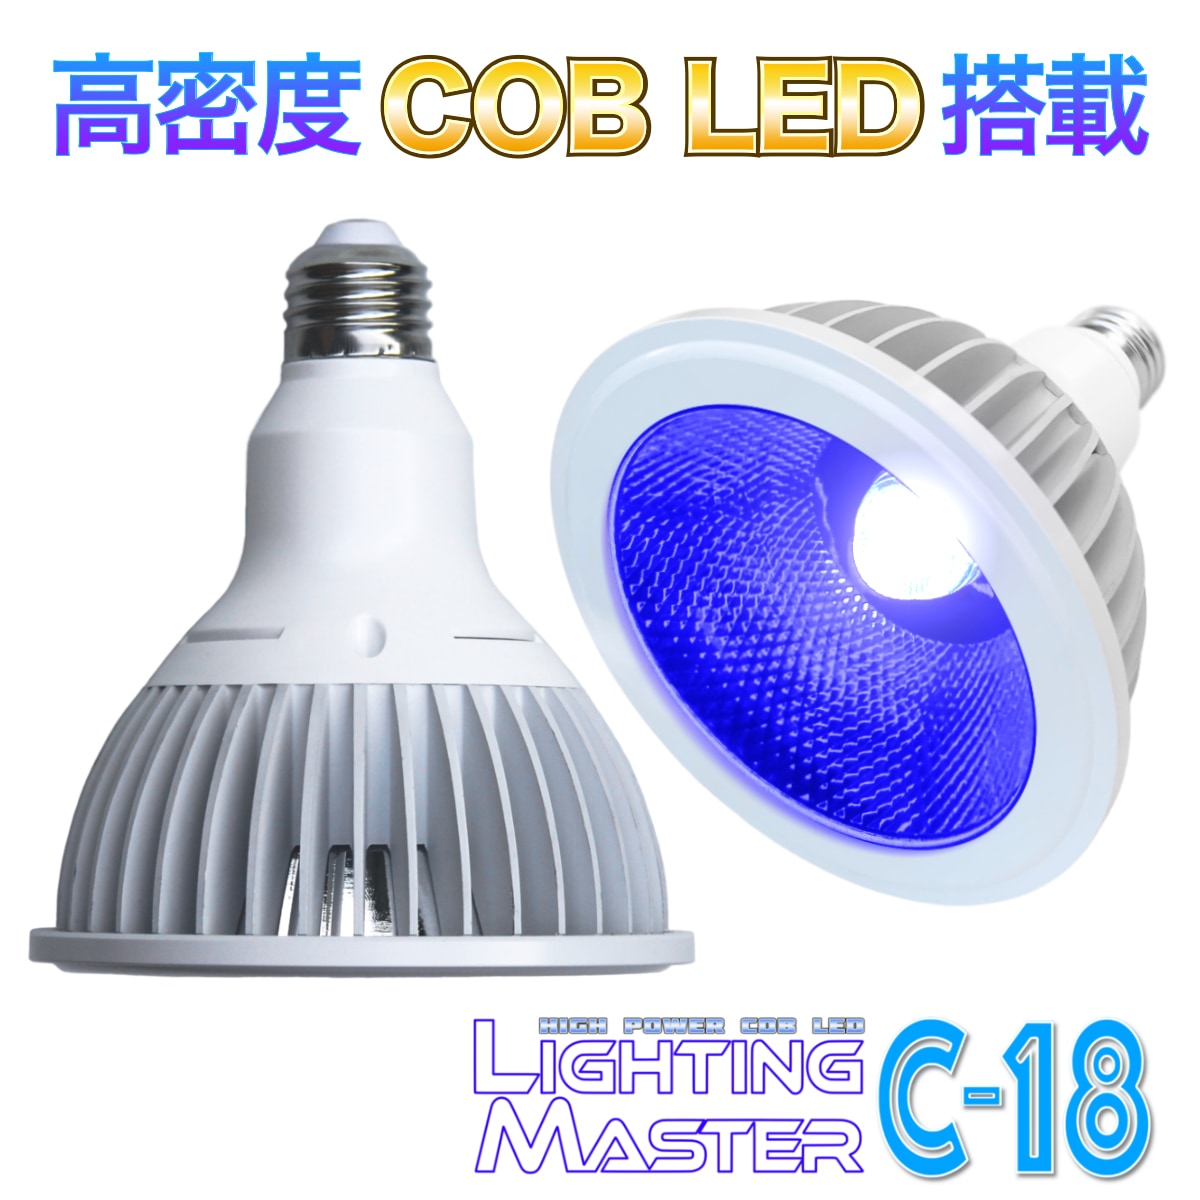 ◆高密度COB LED搭載◆超高輝度LEDランプ Lighting Master C-18【ロイヤルブルー】50,000K